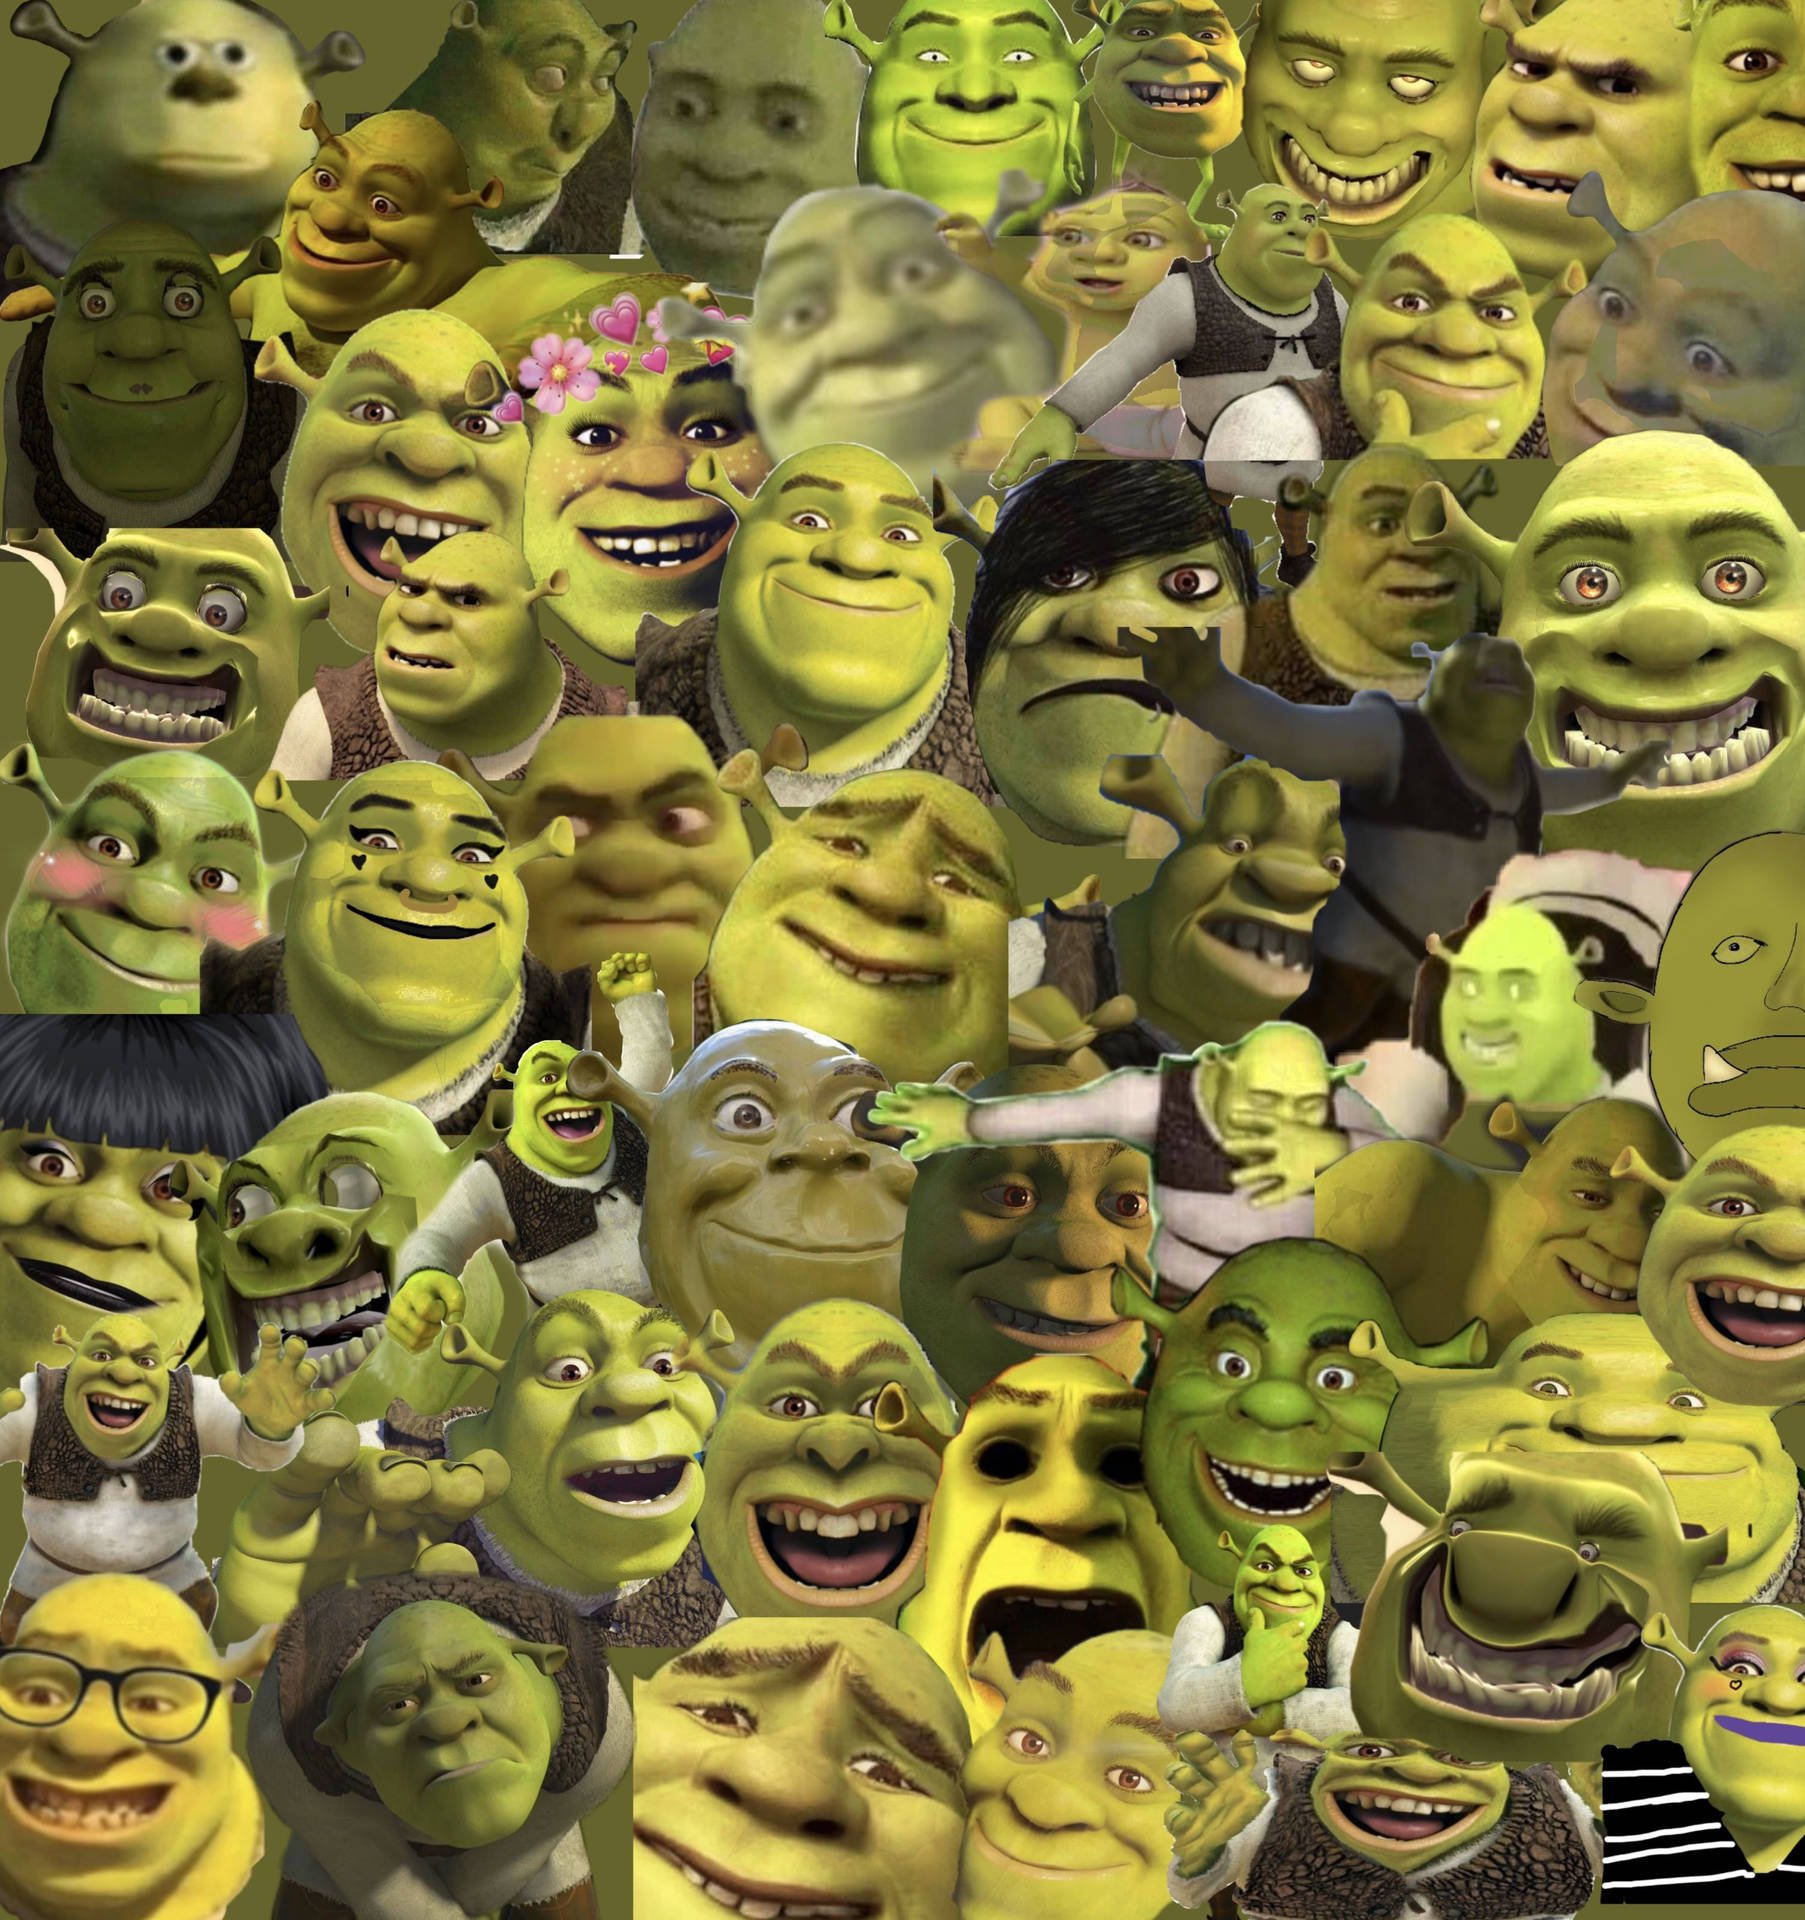 Free Shrek Wallpaper Downloads, Shrek Wallpaper for FREE